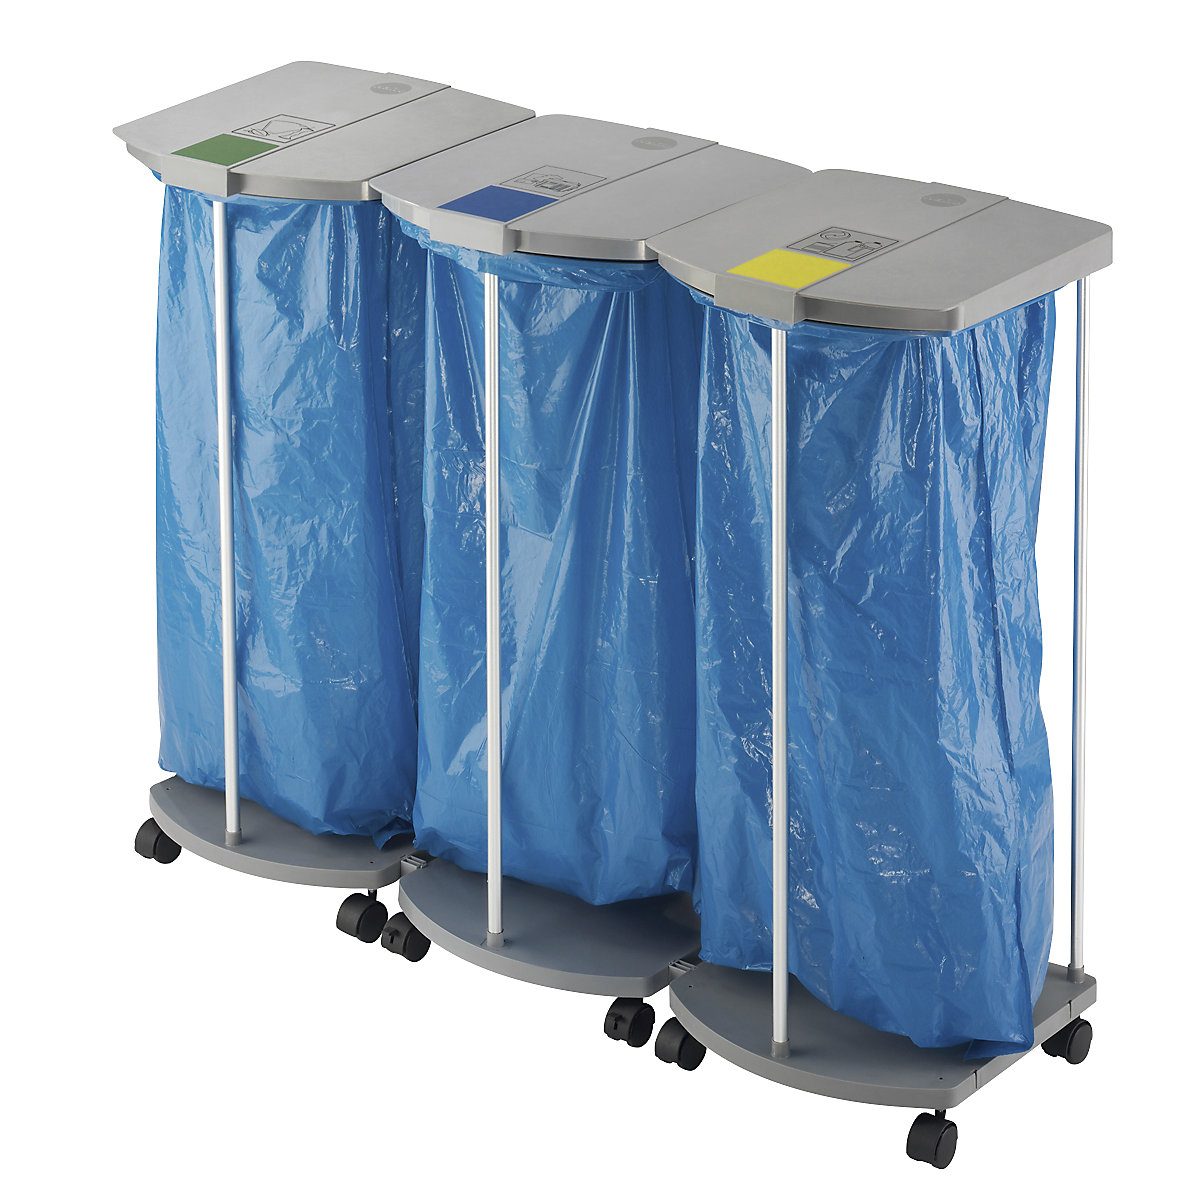 Stojan pro pytle na odpad s 250 modrými pytli na tříděný odpad – Hailo, ProfiLine MSS XXXL, 3 x 120 l, v x š x h 1000 x 1330 x 450 mm, pojízdný-4